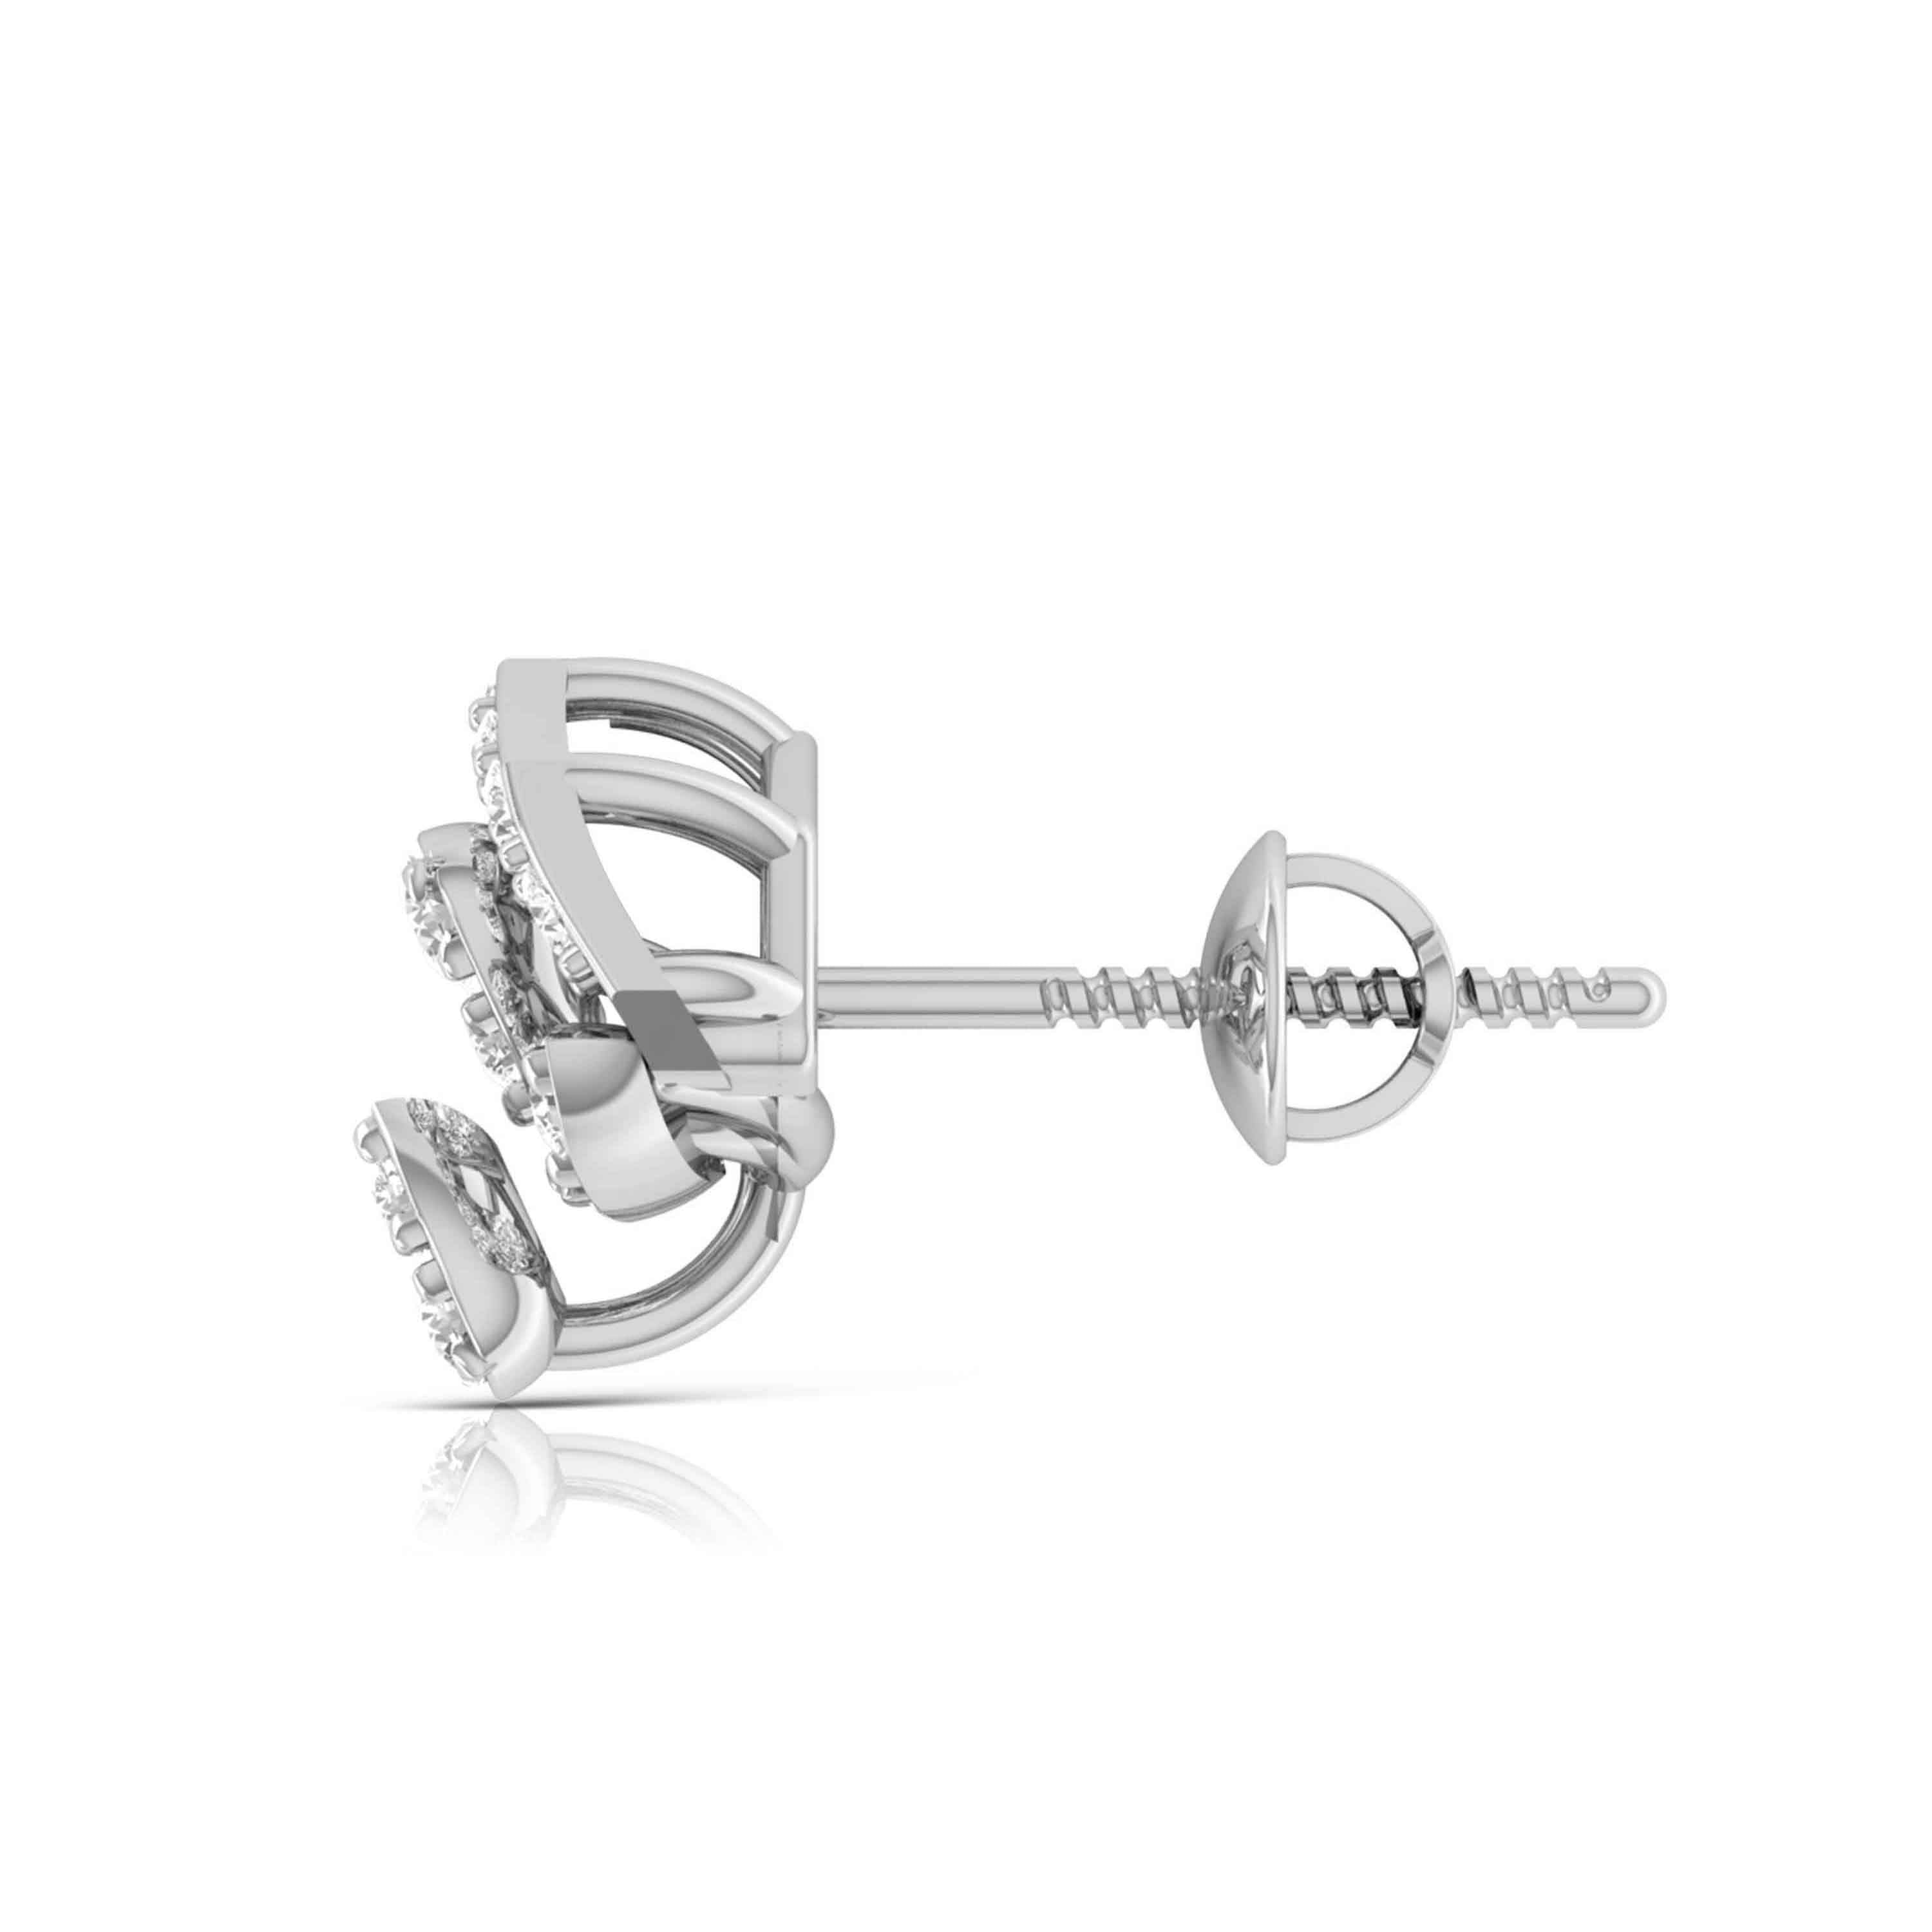 Designer Platinum Diamond Earrings for Women JL PT E OLS 14